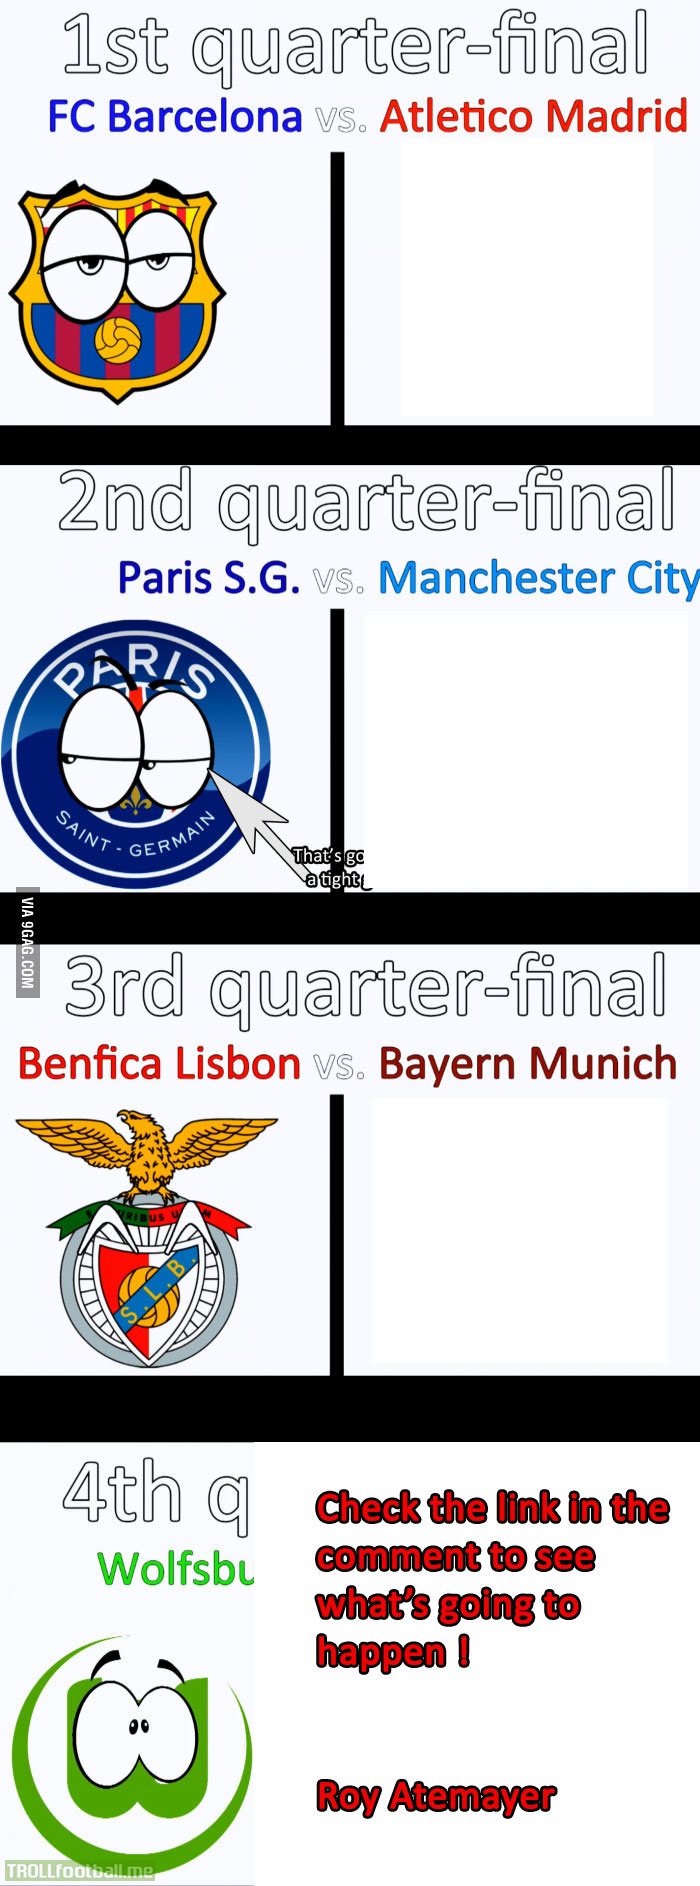 Champions League quarter-finals, what's gonna happen ?